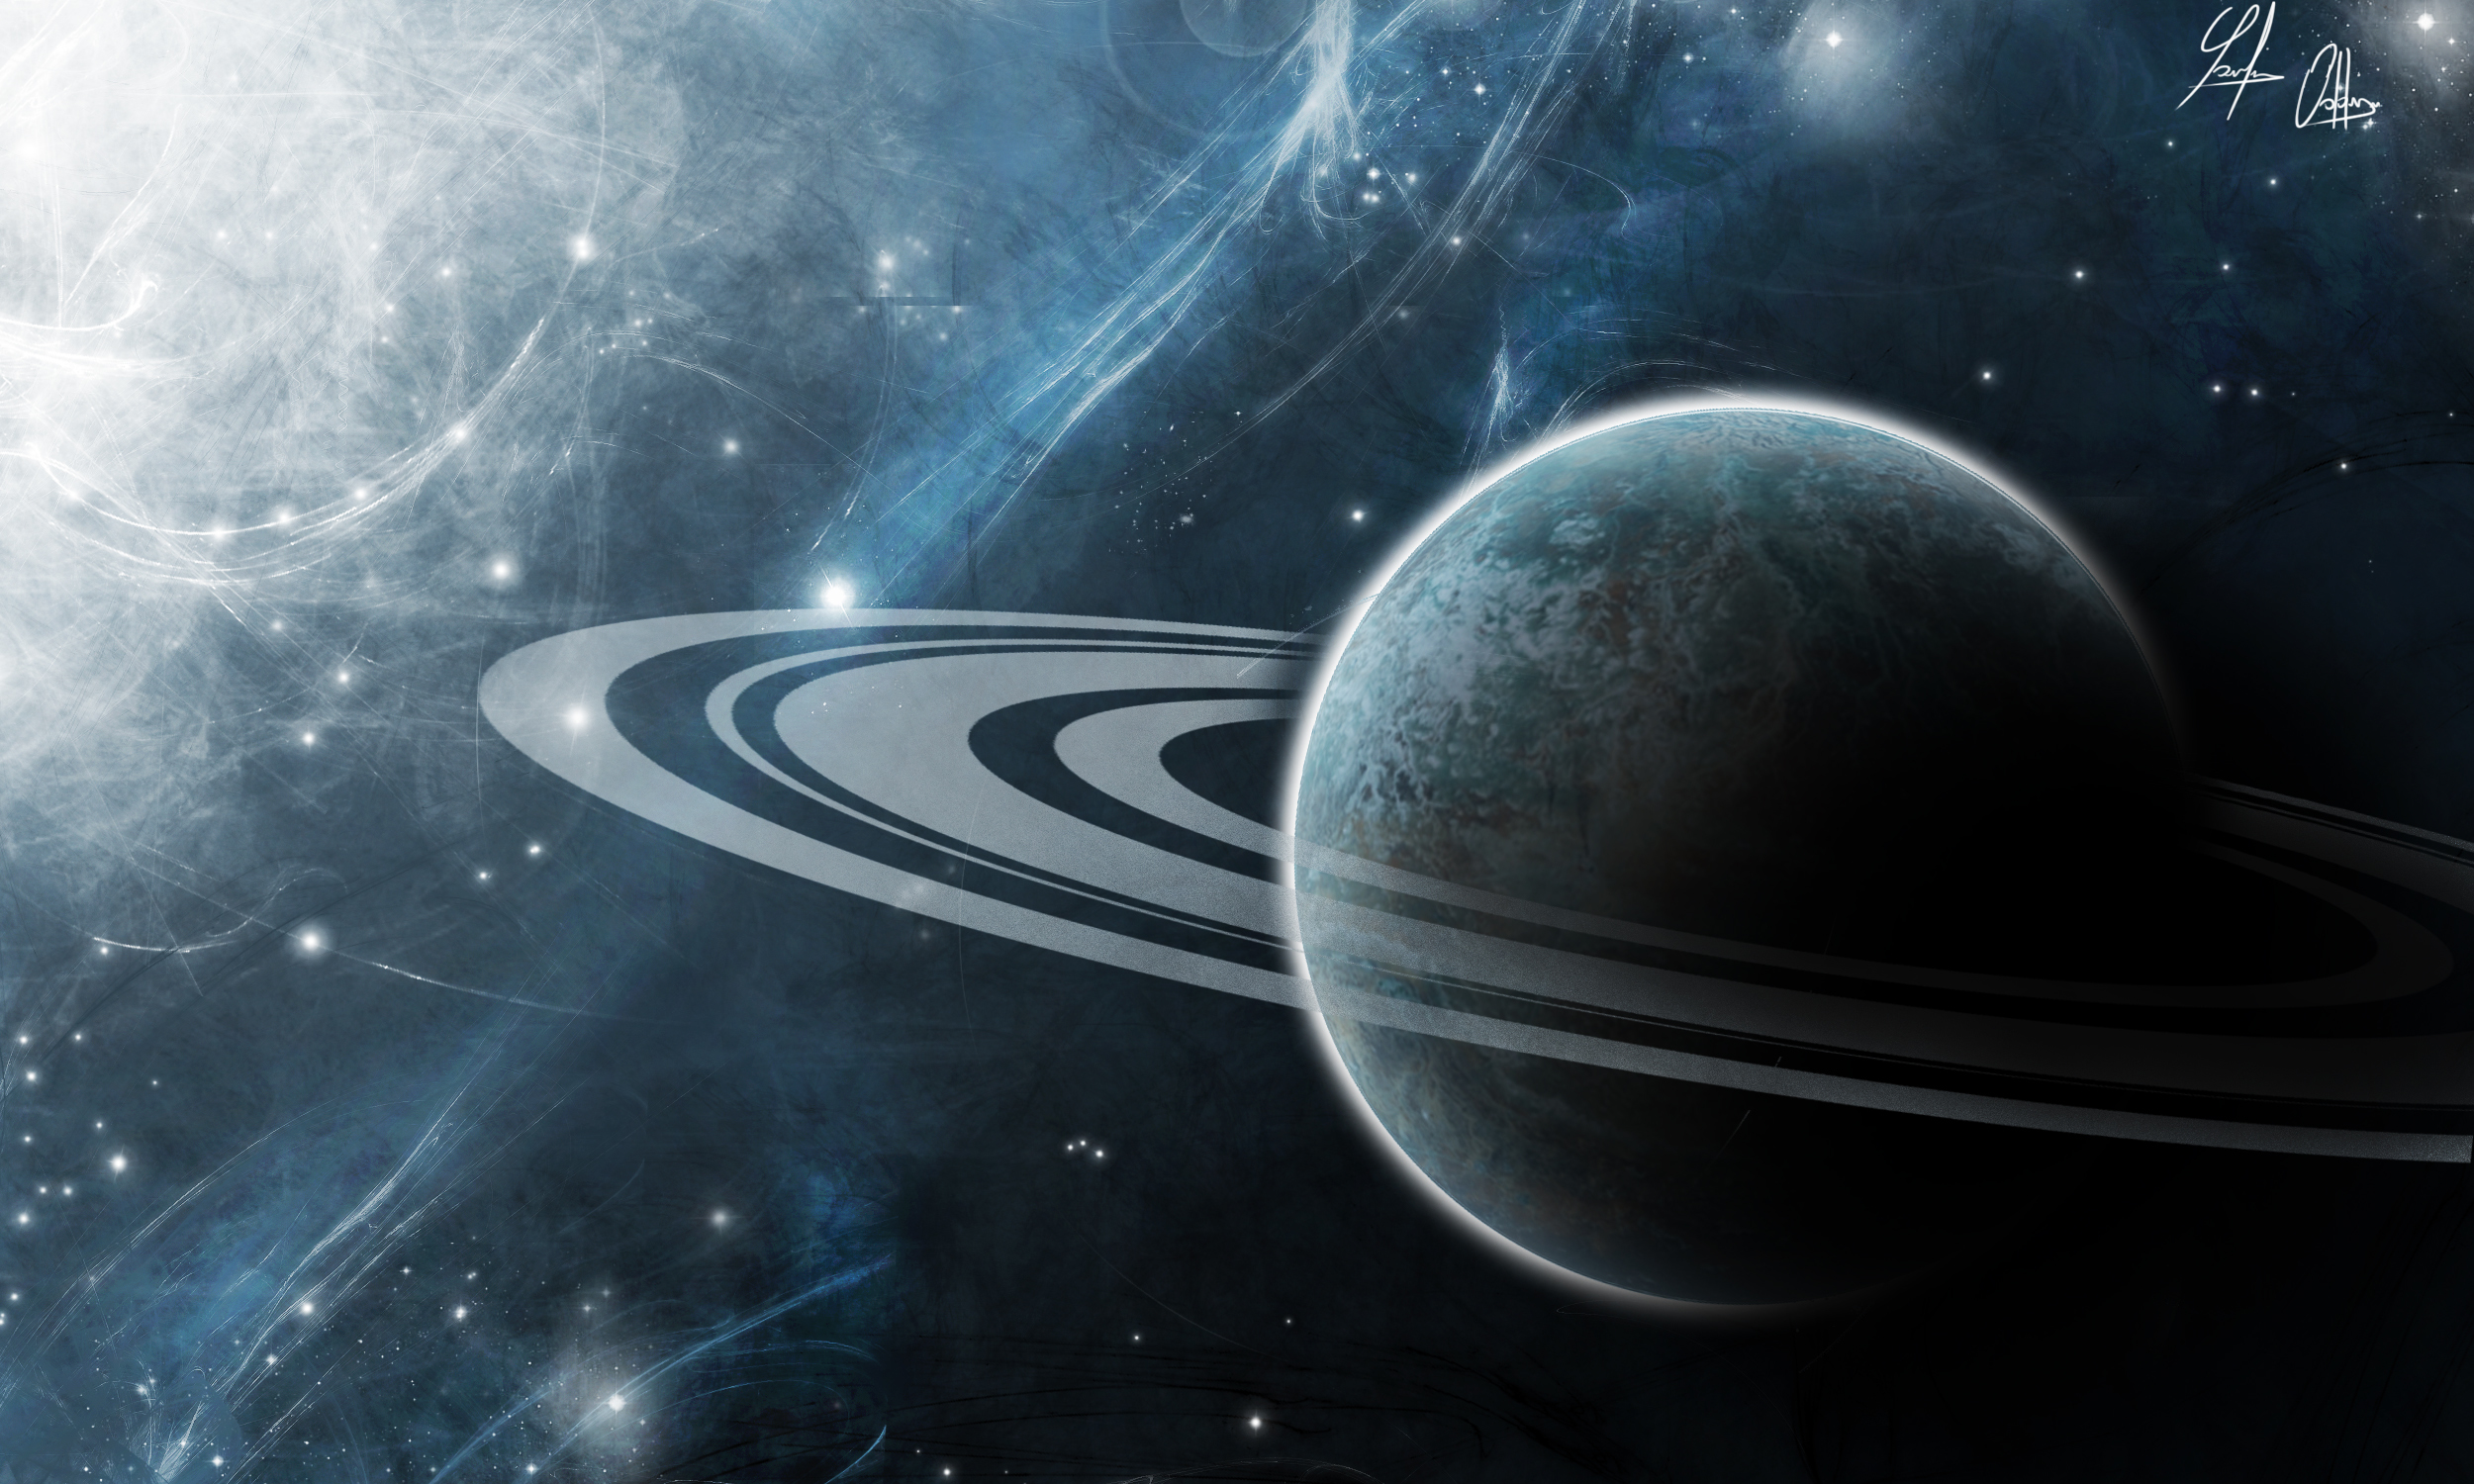 Обои Планета кольца свет картинки на рабочий стол на тему Космос - скачать скачать